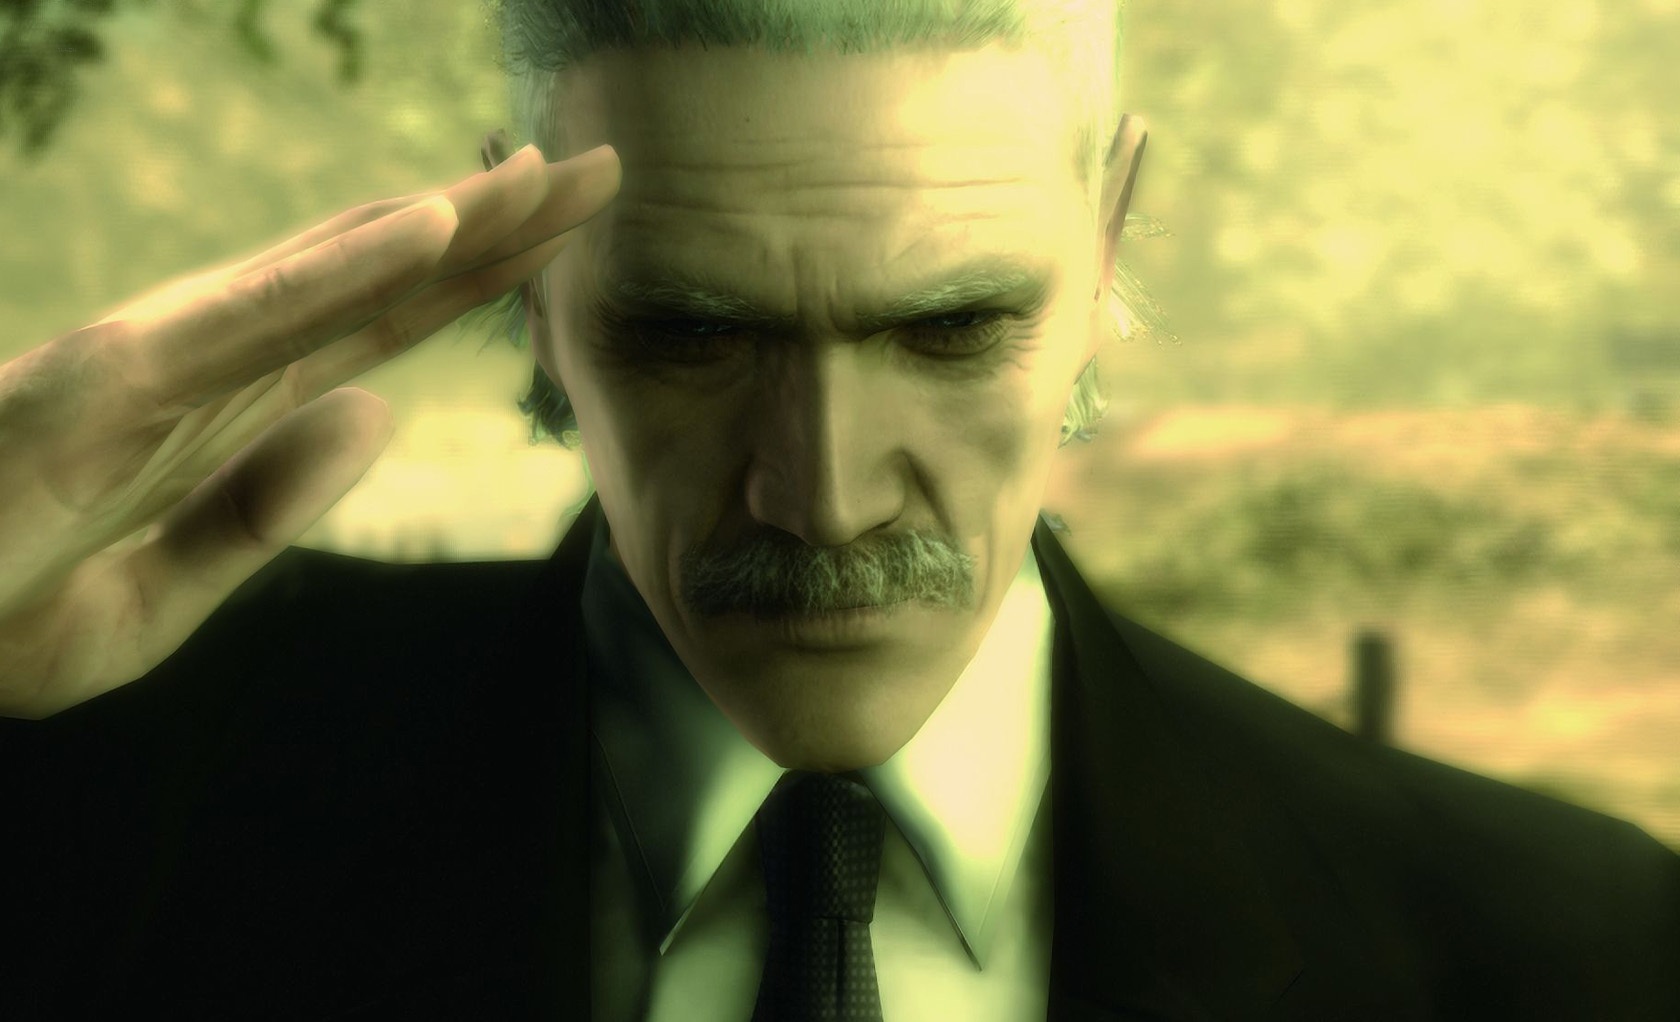 Metal Gear Solid 4 är nu nästan spelbar i den nya versionen av PlayStation 3 Emulator - Gameplay Video i 4K